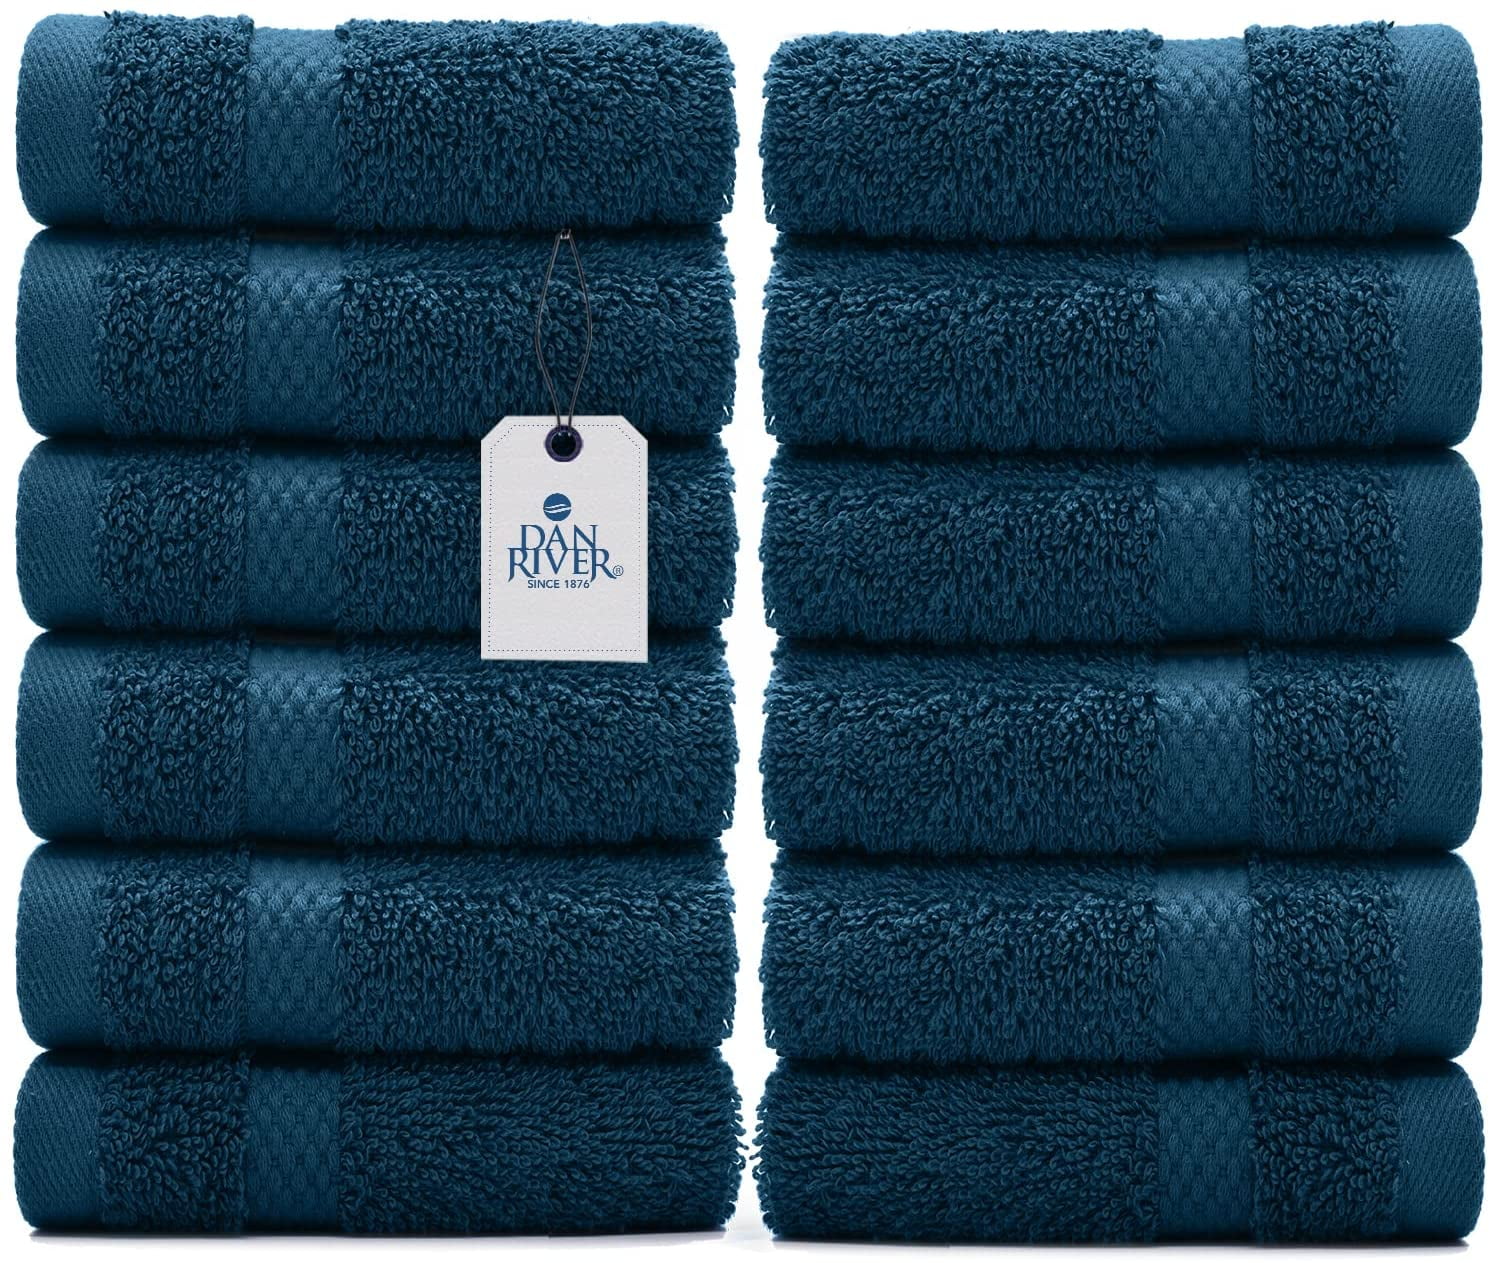 Nestwell™ Hygro Fashion Stripe Washcloth in New Blue, Wash Cloth